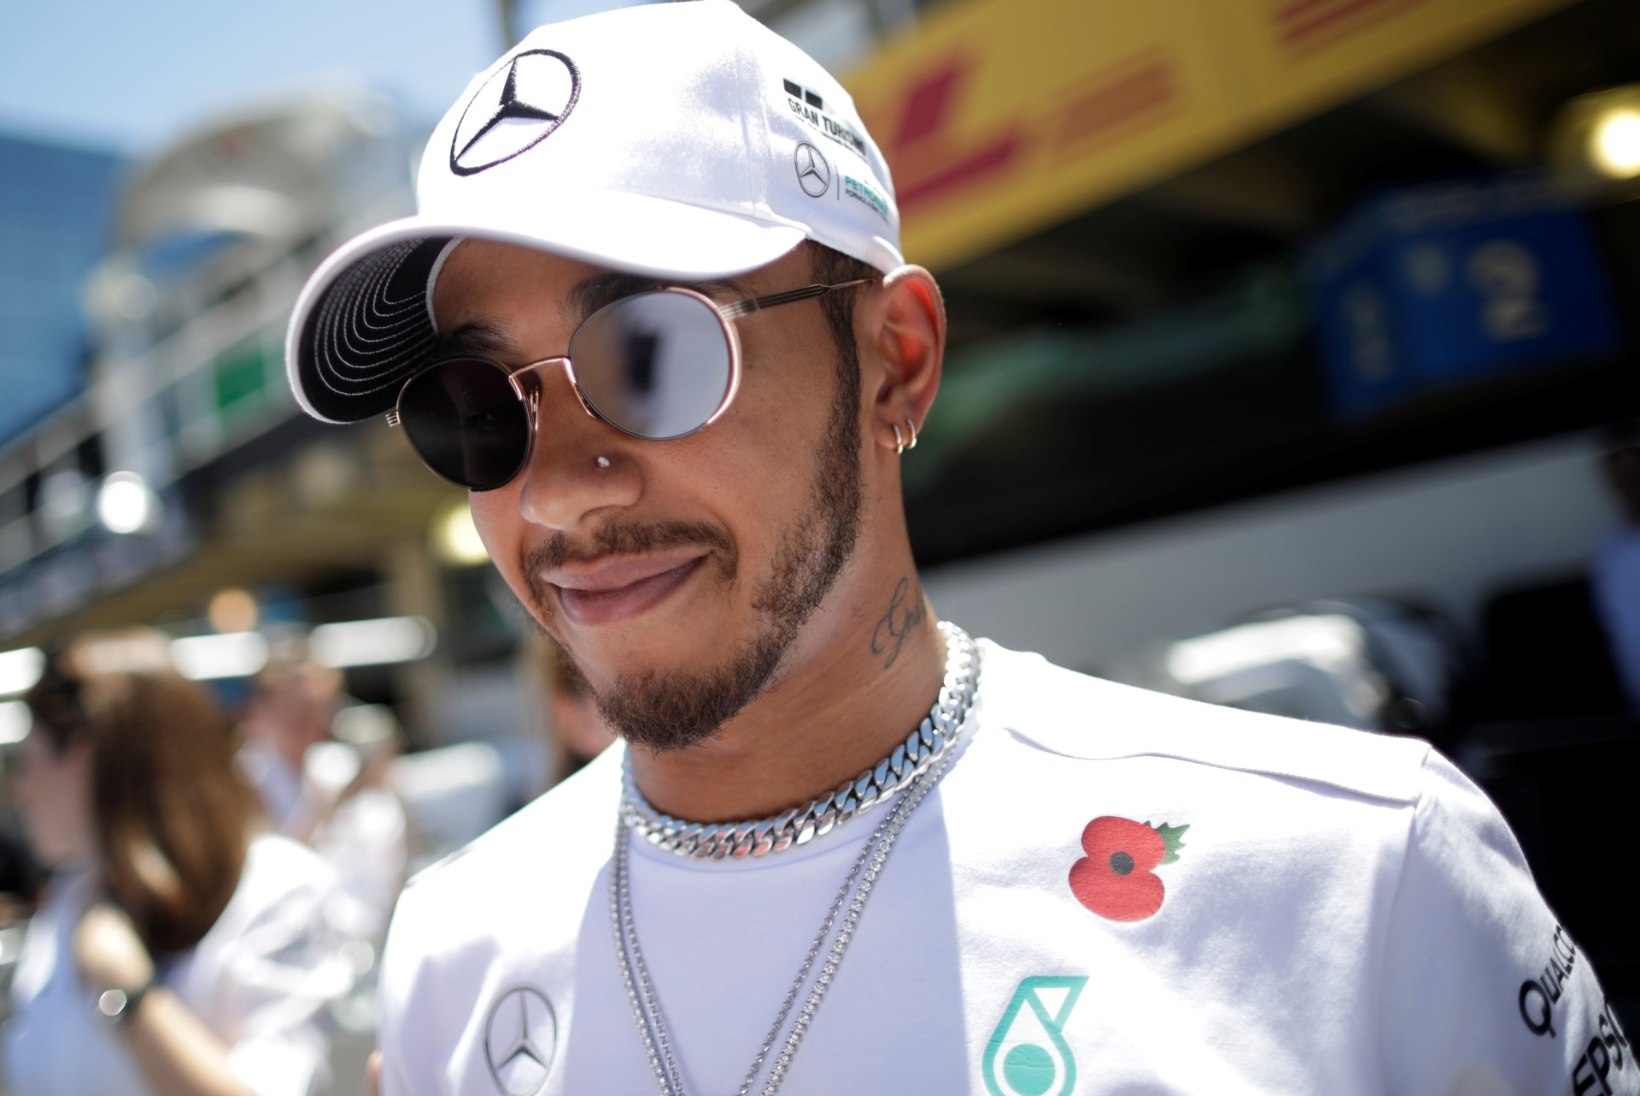 Neljakordne F1 tšempion Lewis Hamilton hakkab teenima meeletuid summasid